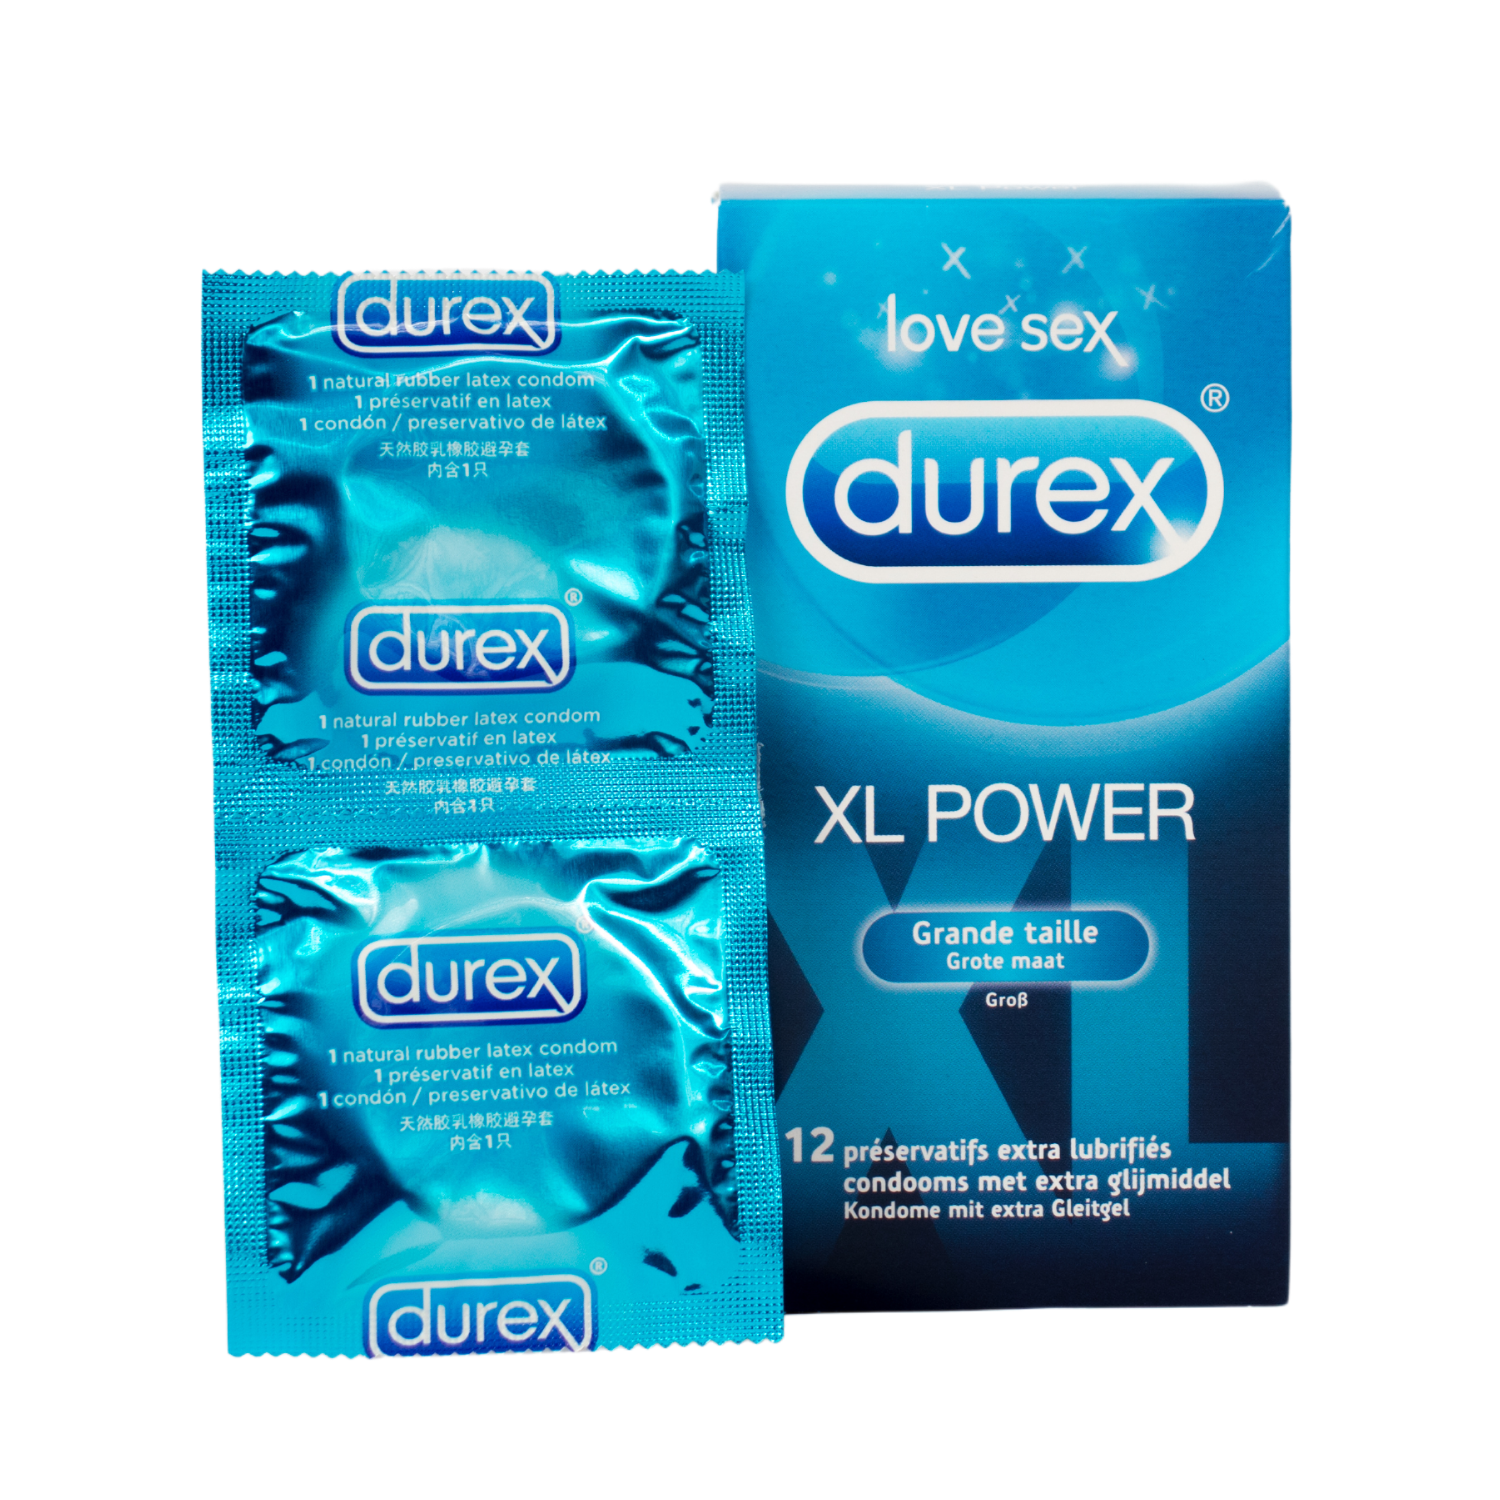 Preservativos Durex XL Power – Flavourez